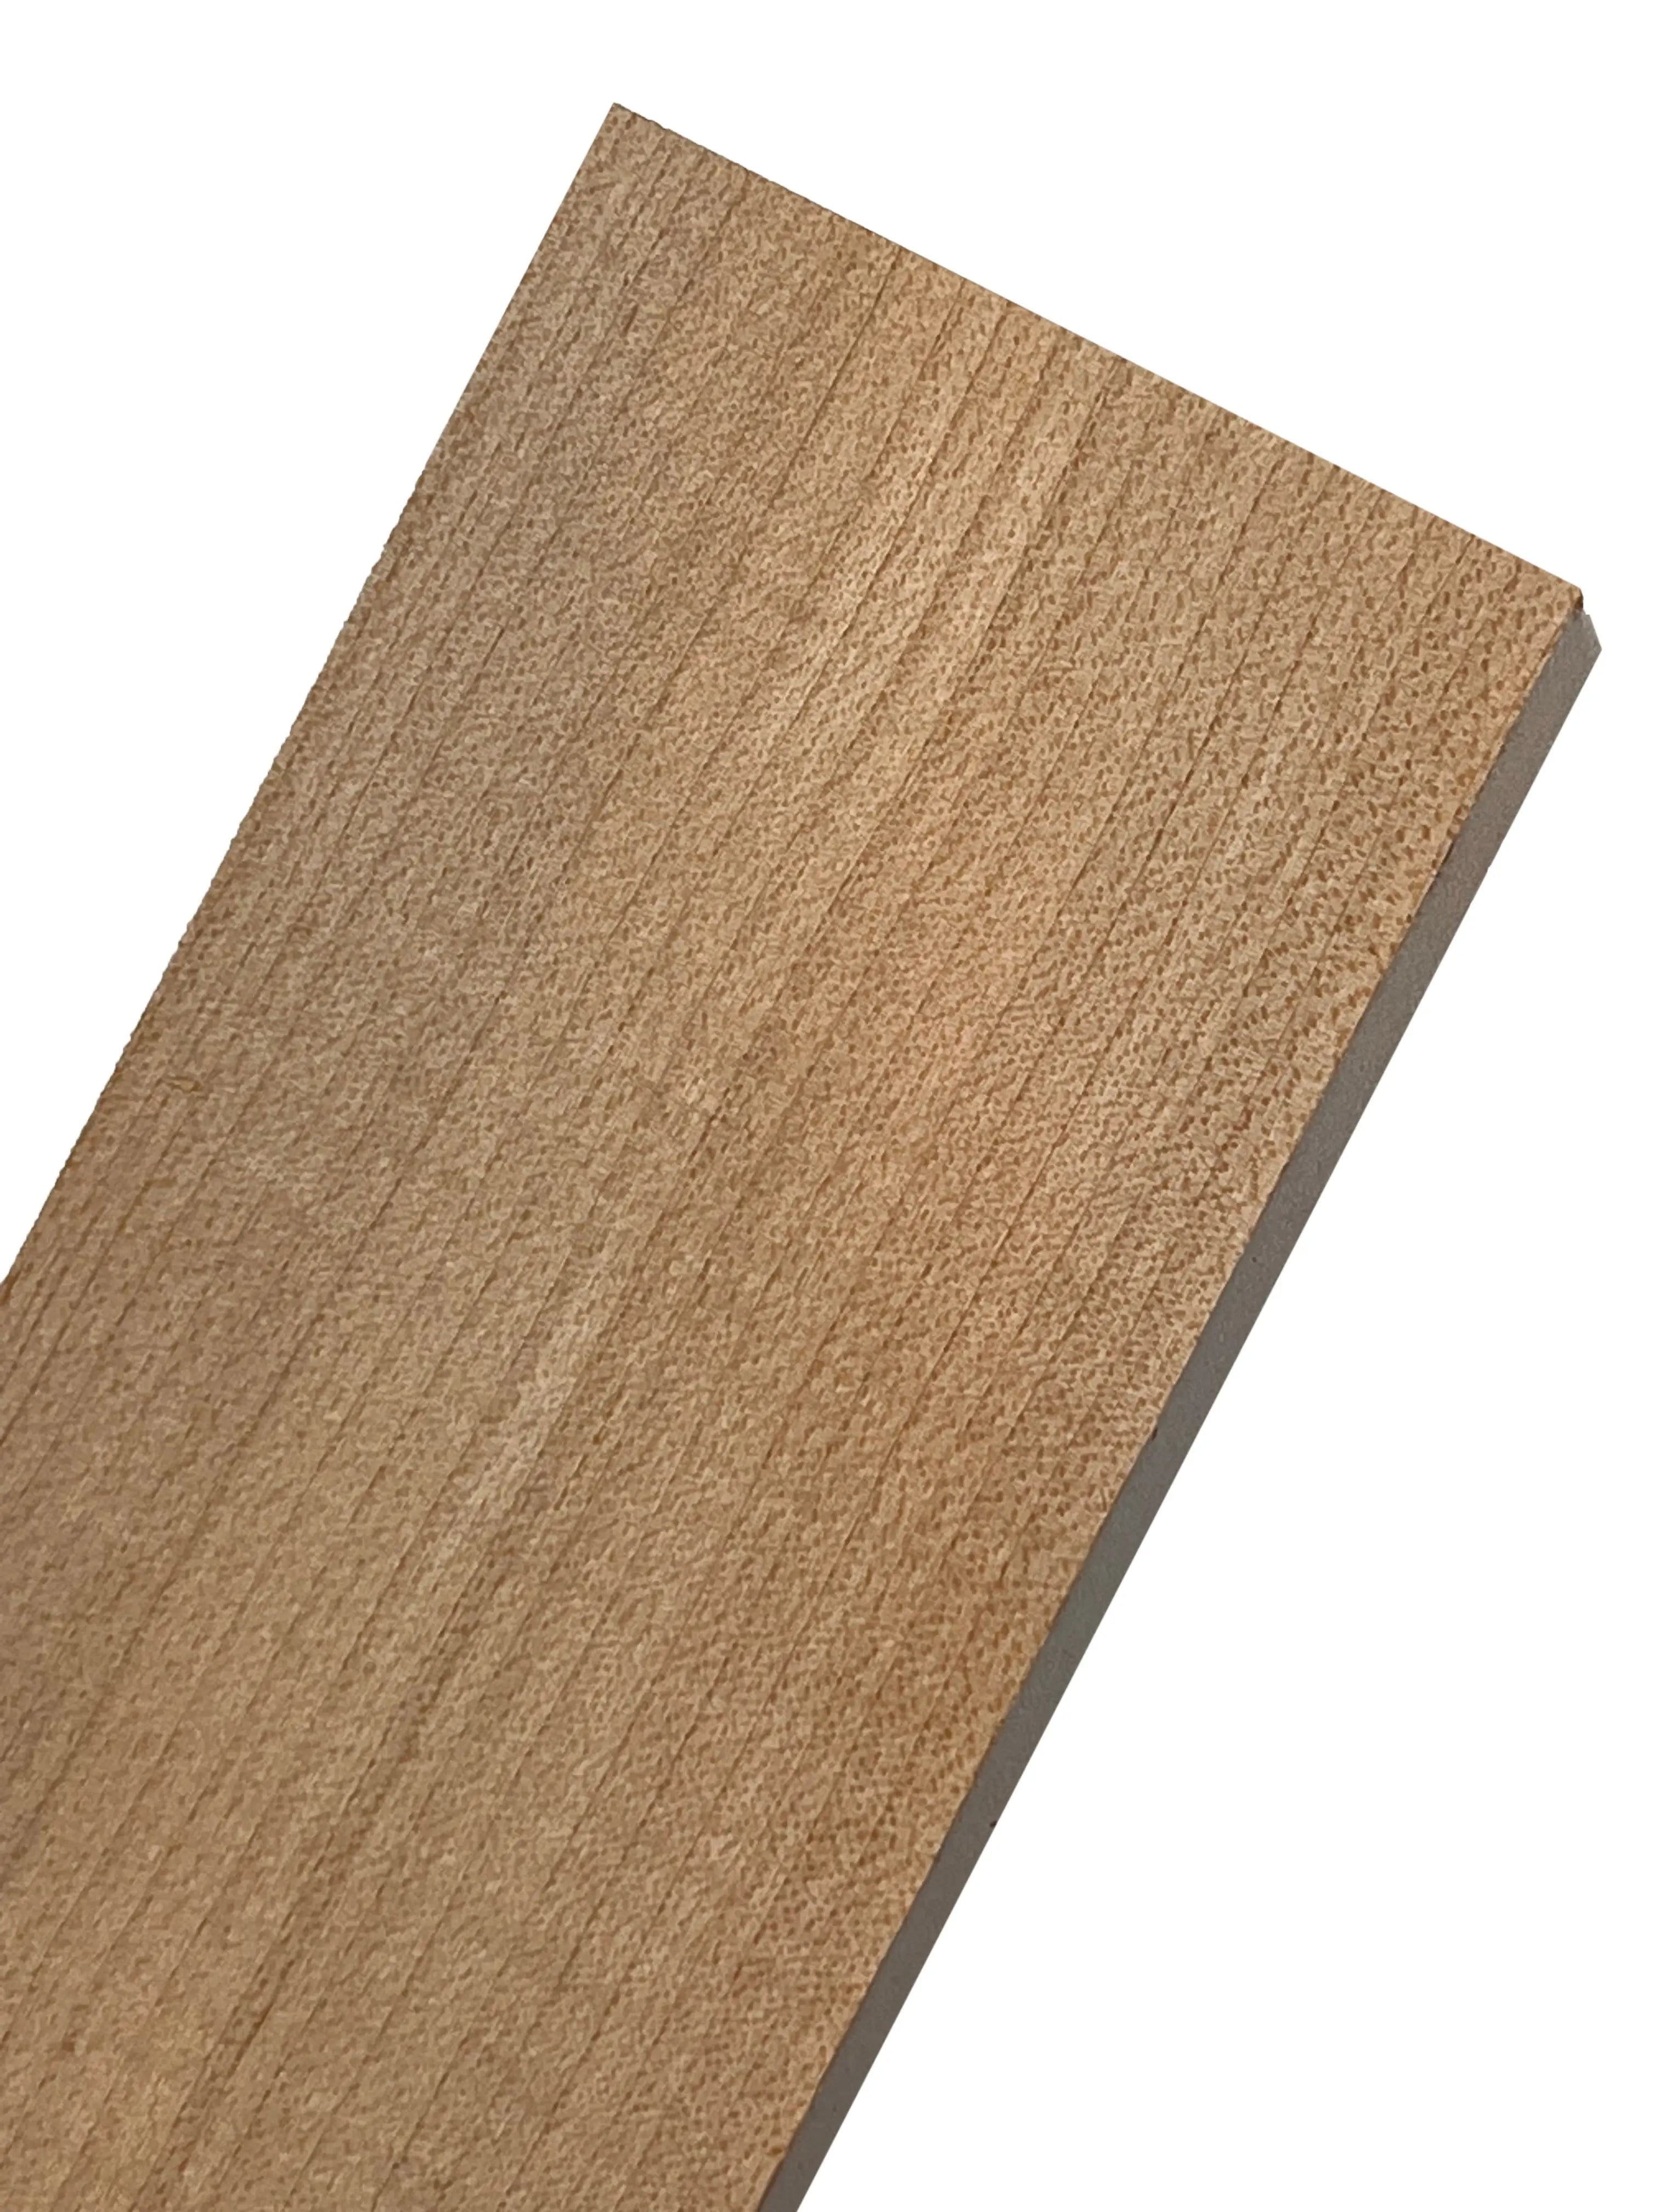 Woodcraft Woodshop - Hard Maple - 2 x 2 x 30